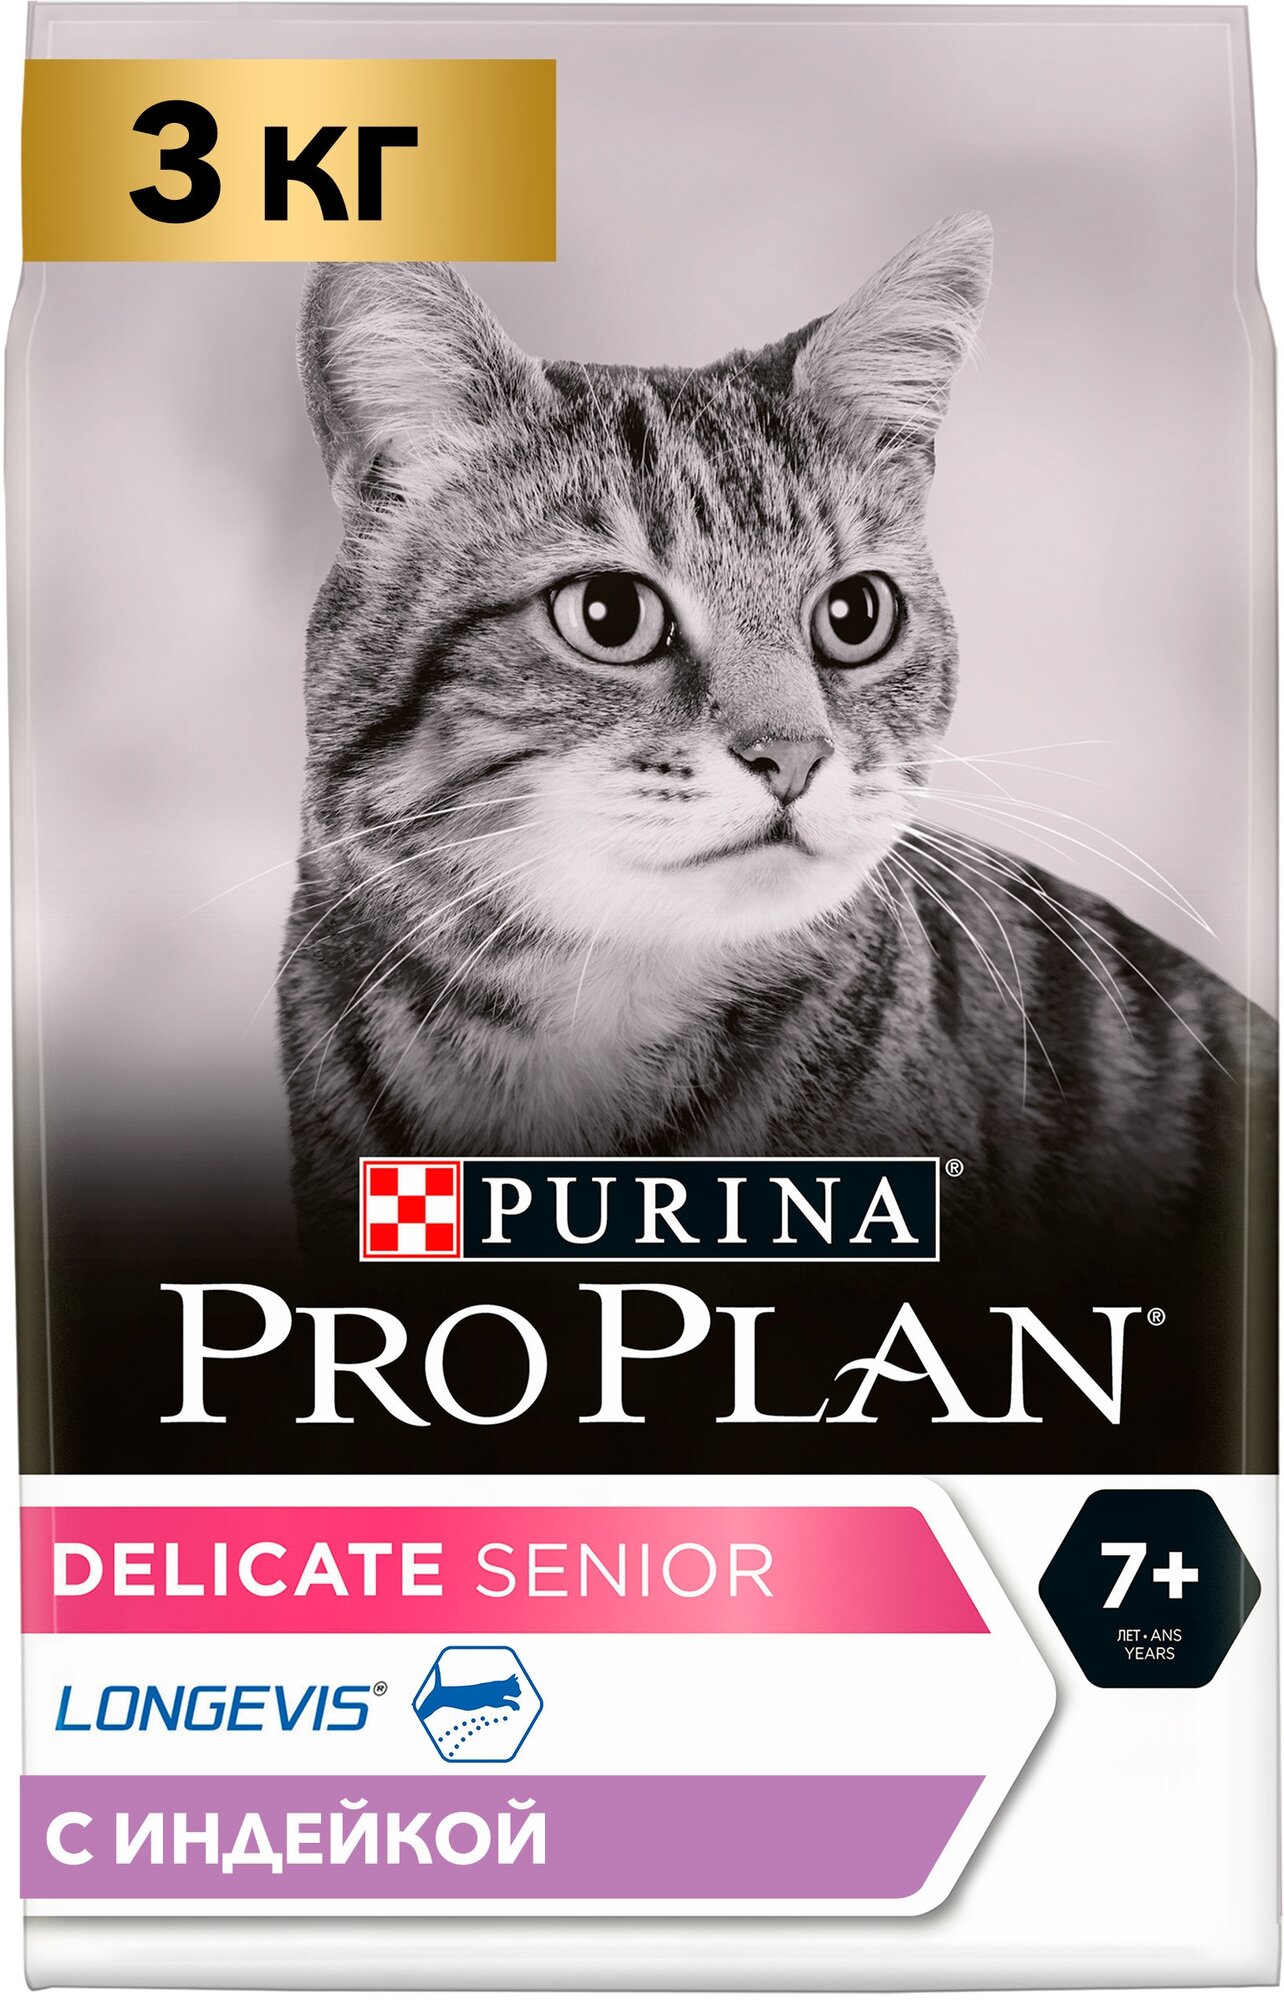 Pro Plan Delicate Senior корм для кошек старше 7 лет с чувствительным пищеварением Индейка, 3 кг.